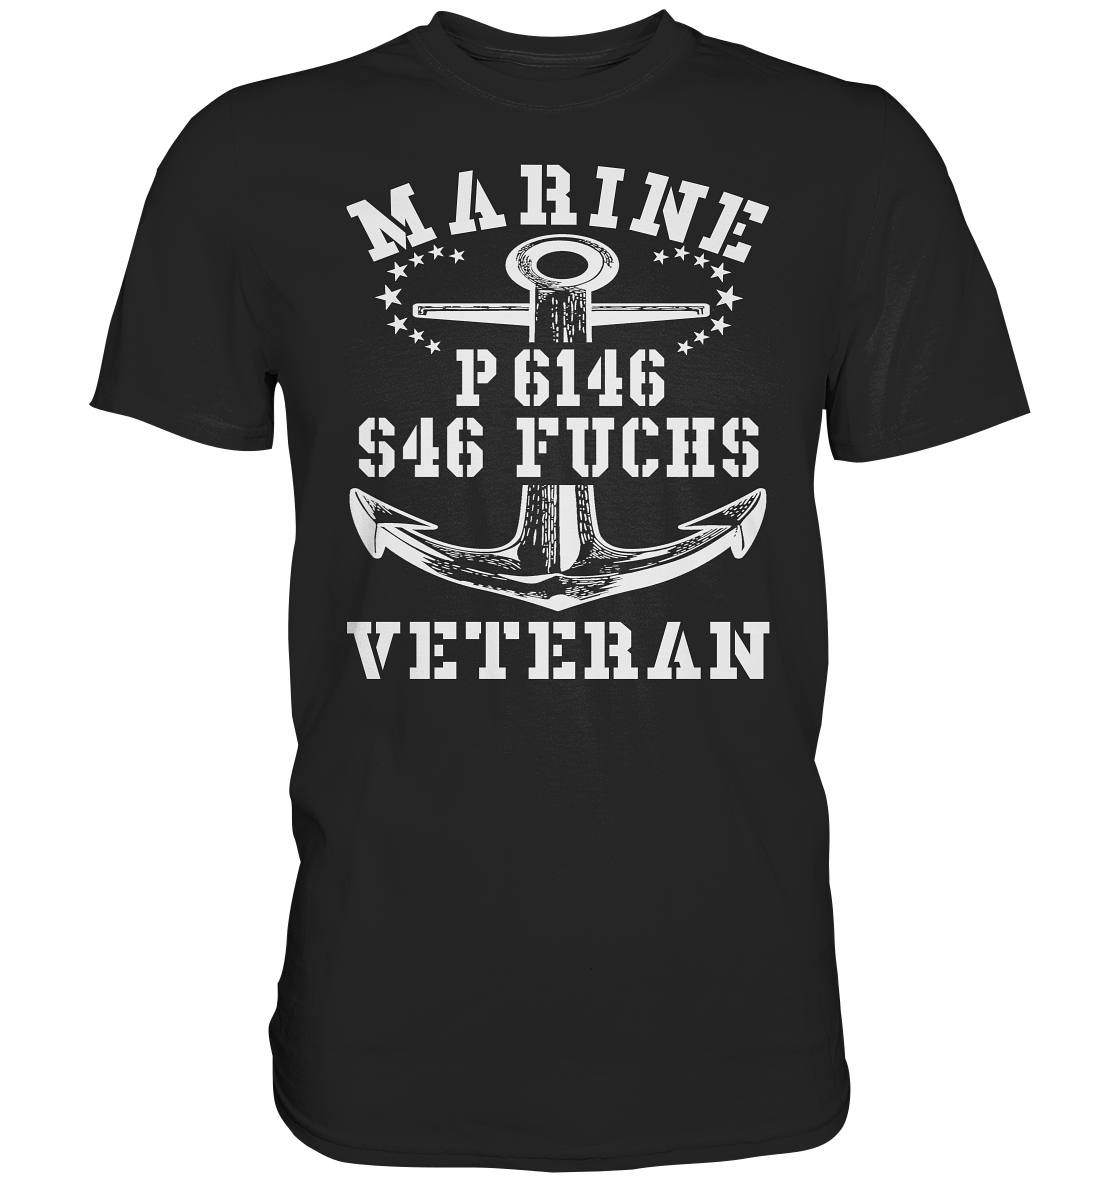 P6146 S46 FUCHS Marine Veteran - Premium Shirt